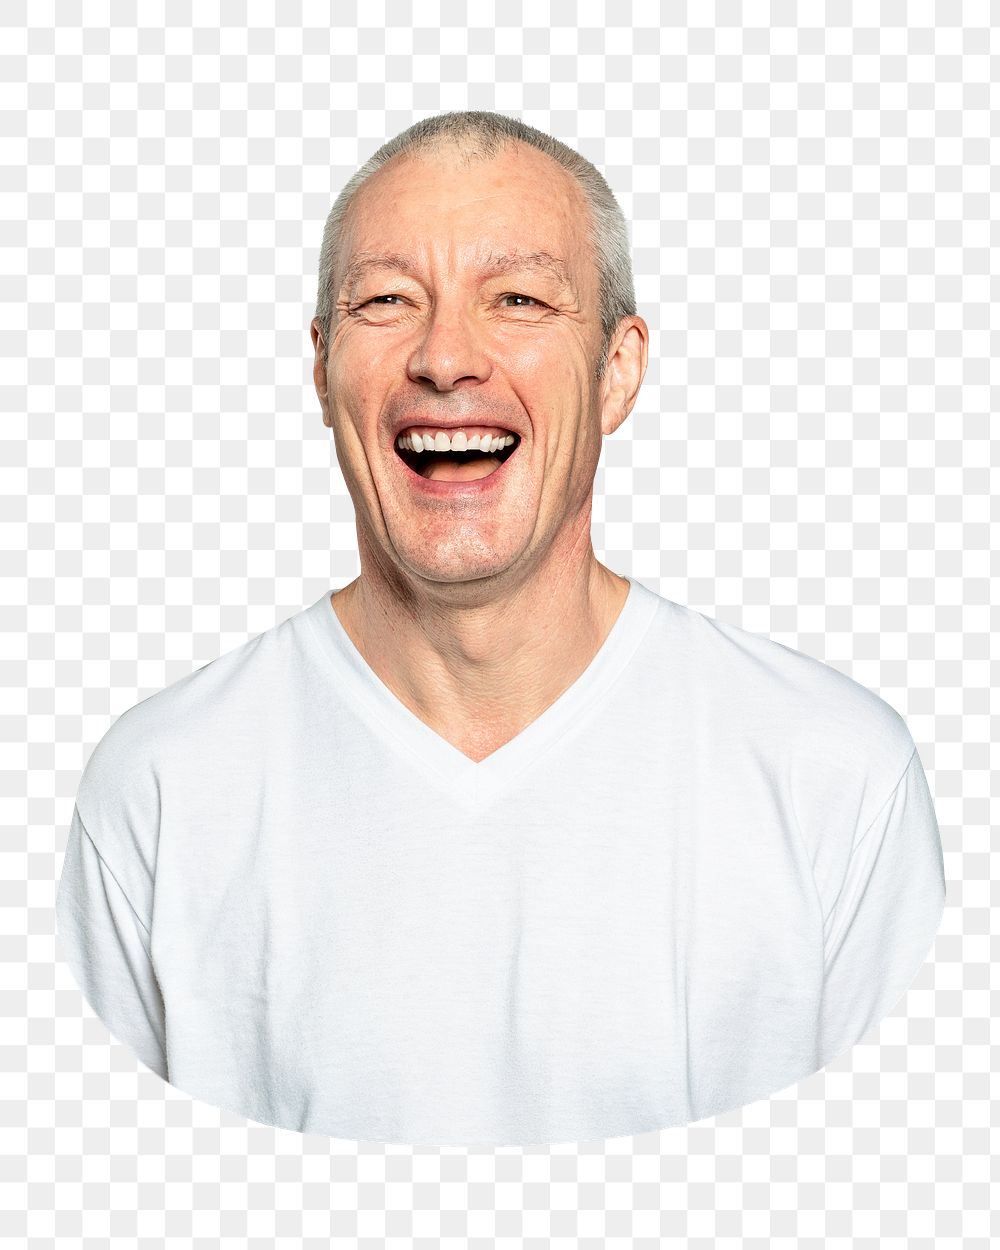 Happy senior man png portrait, transparent background